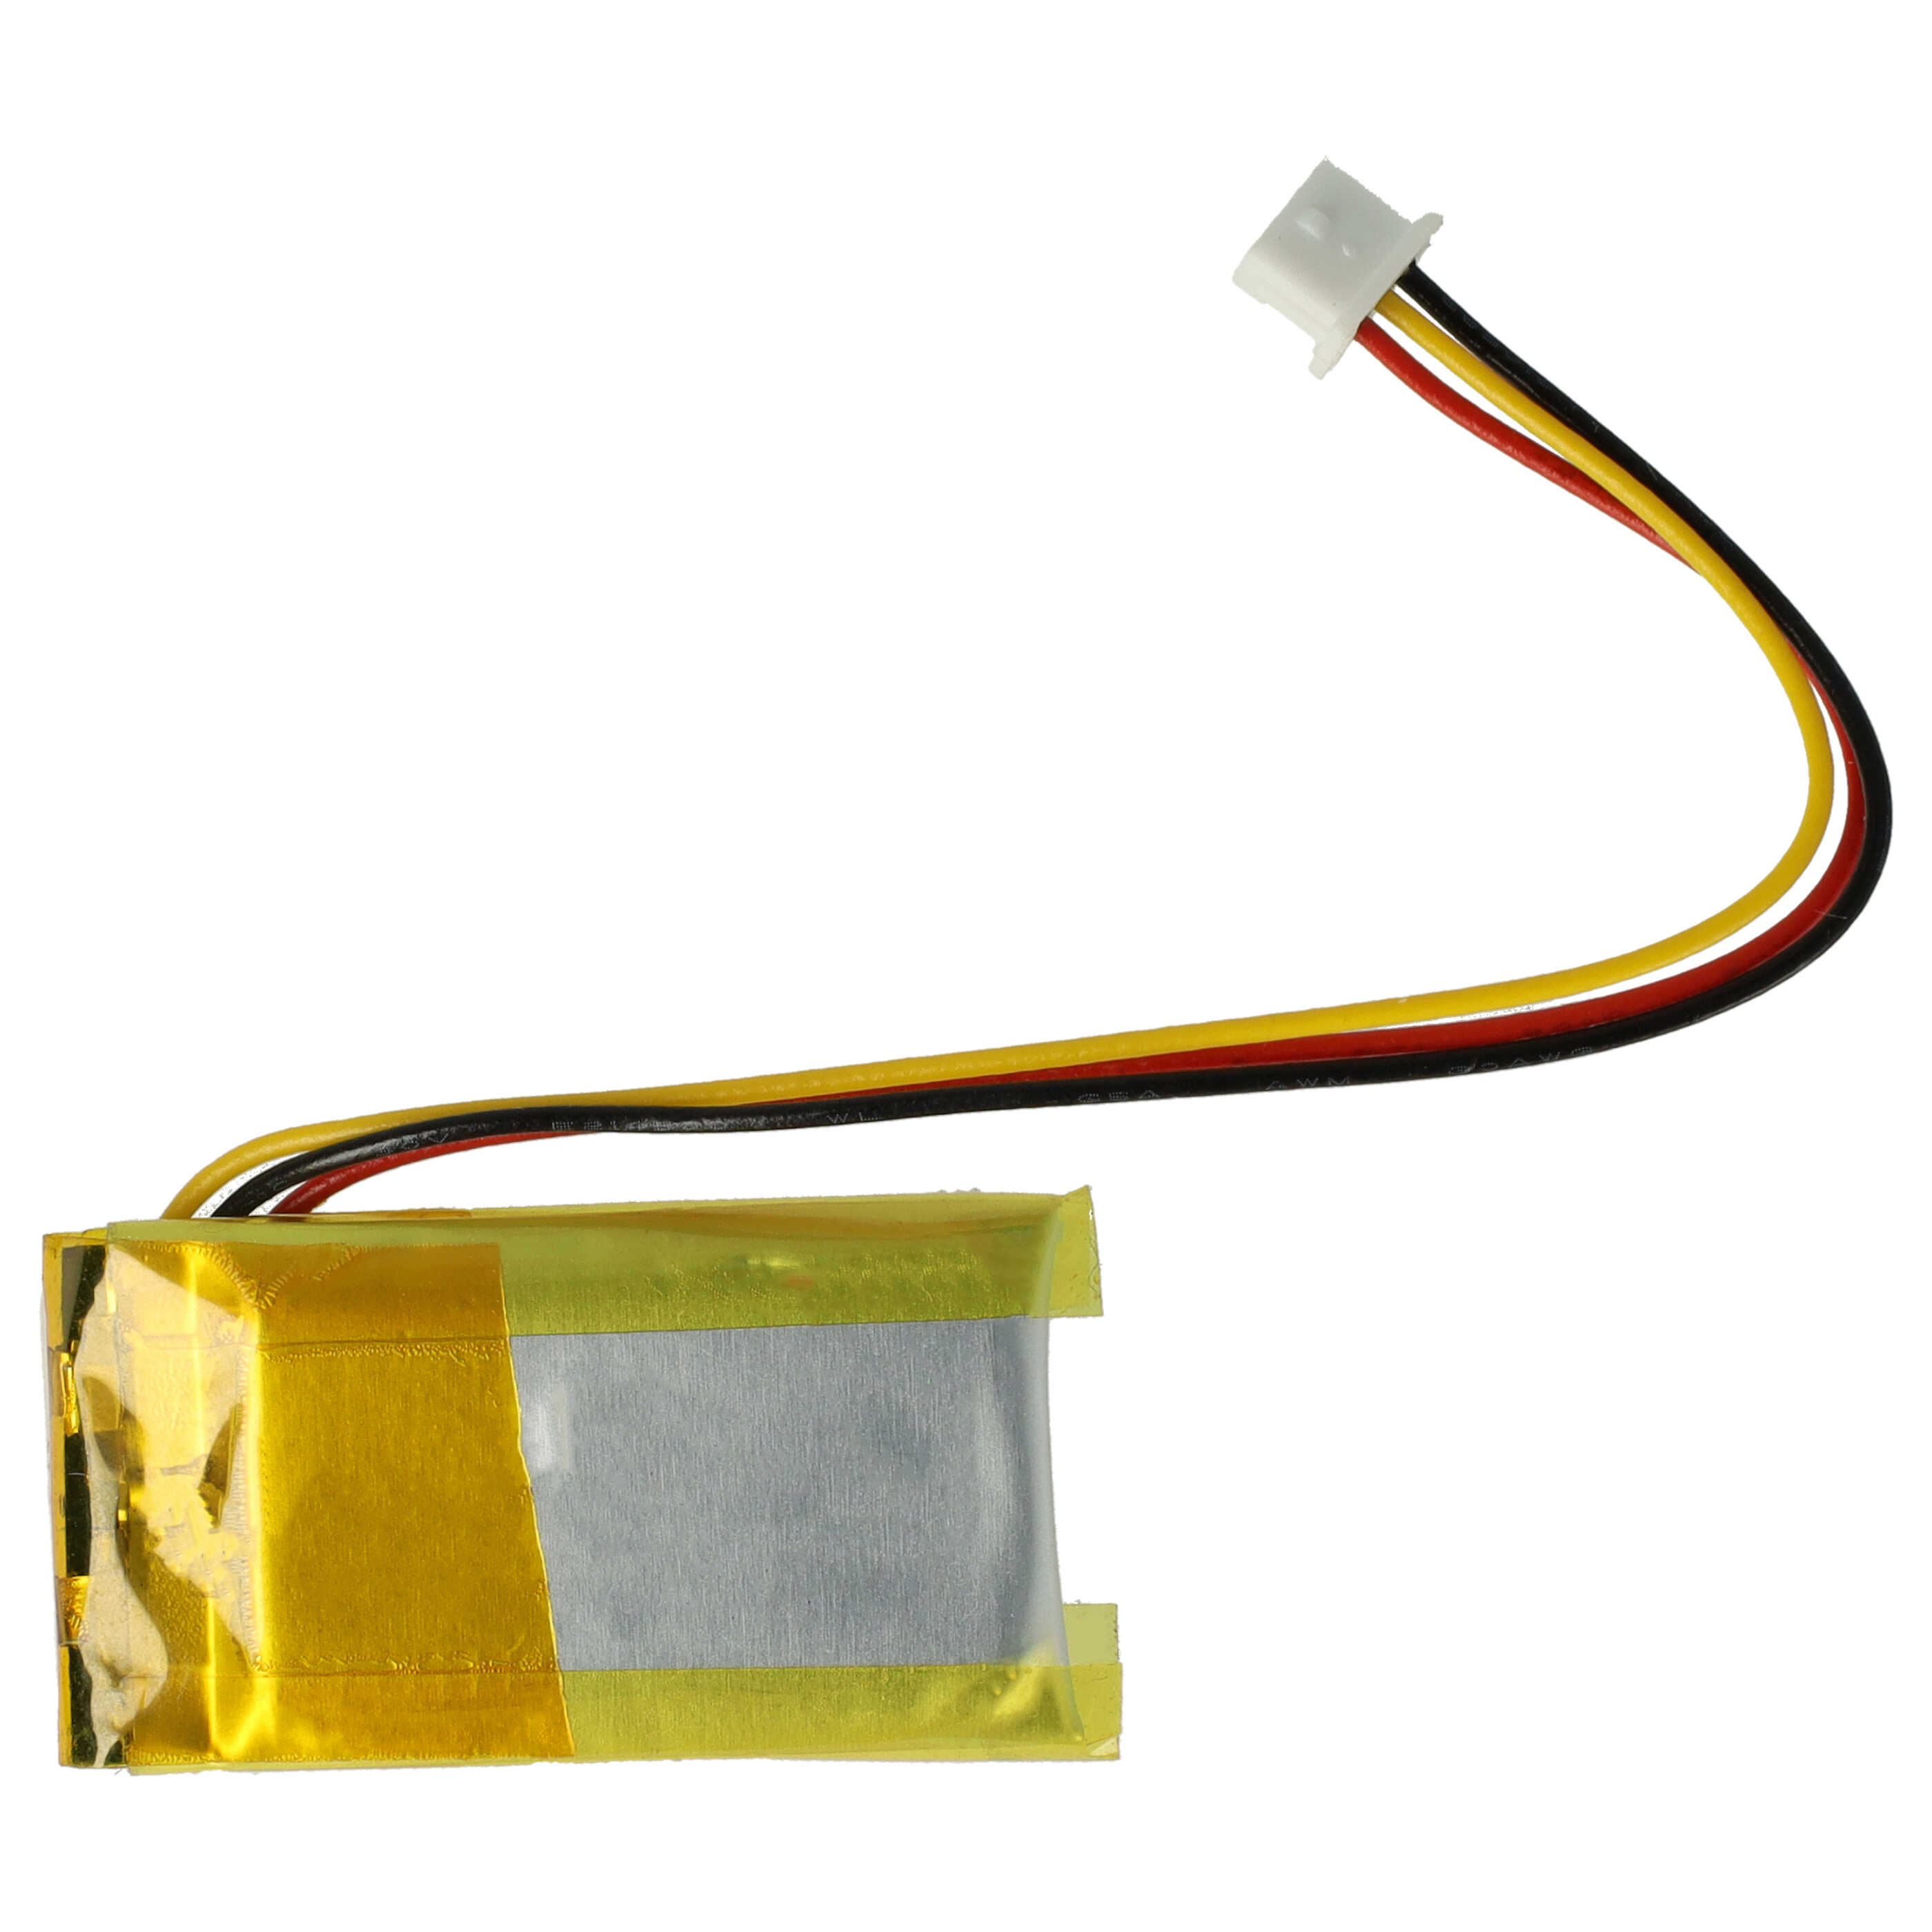 Batterie remplace Logitech 533-000151, AHB521630, 533-000069 pour souris sans-fil - 180mAh 3,7V Li-polymère